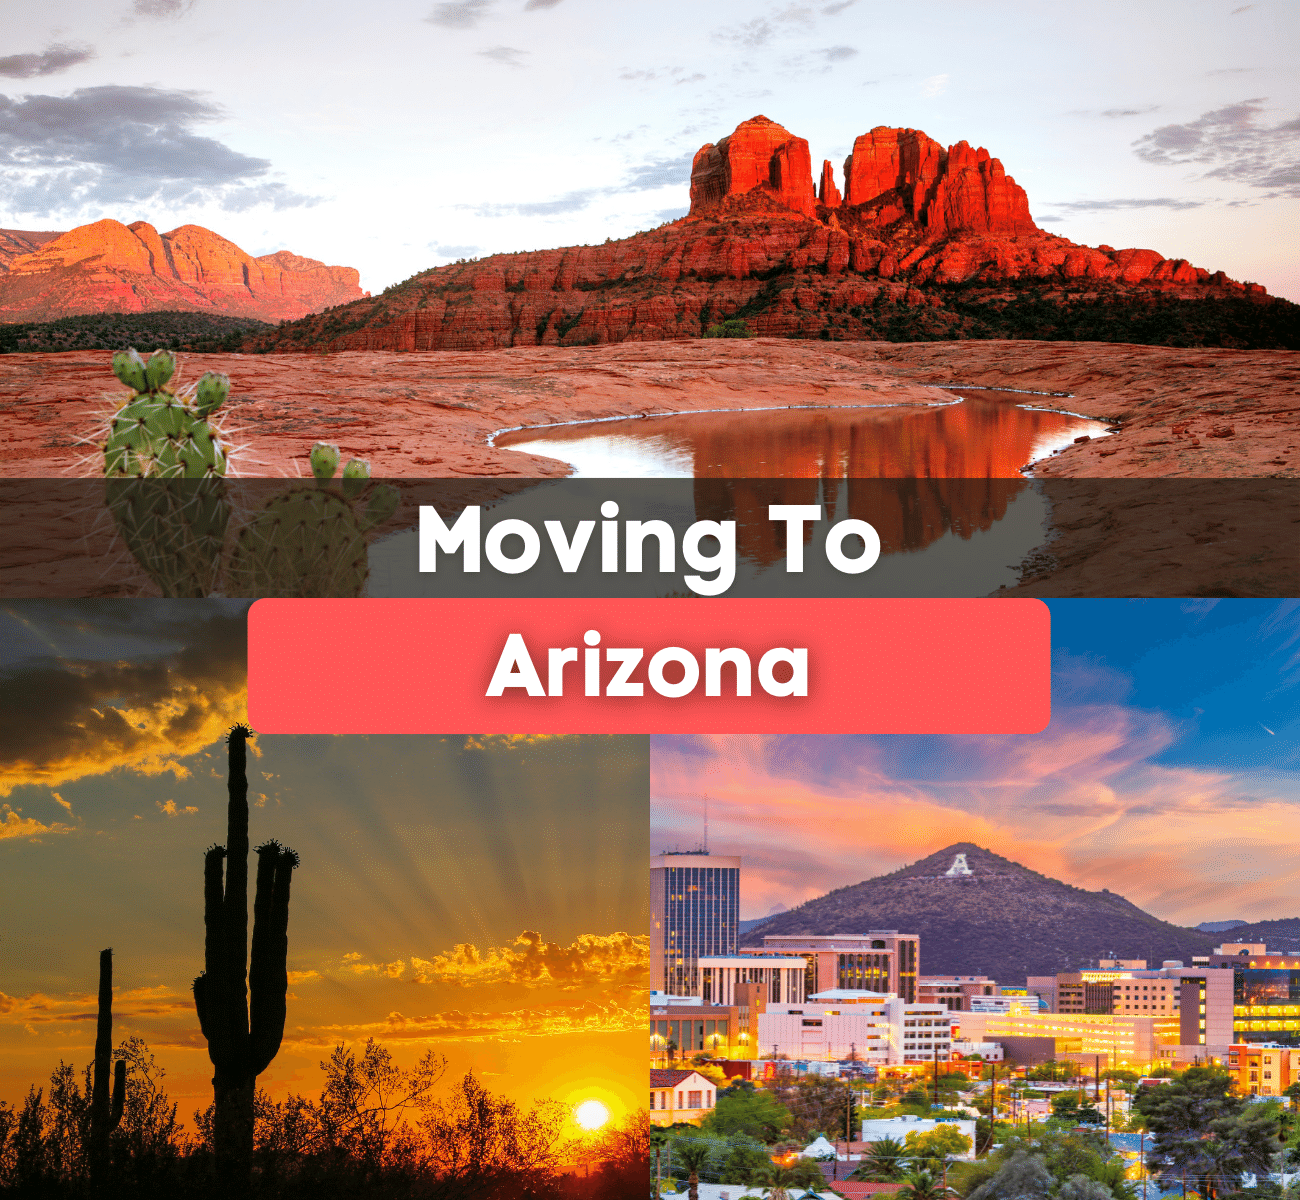 Moving to Arizona graphic with Sedona, Arizona, Tucson, Arizona, and cacti